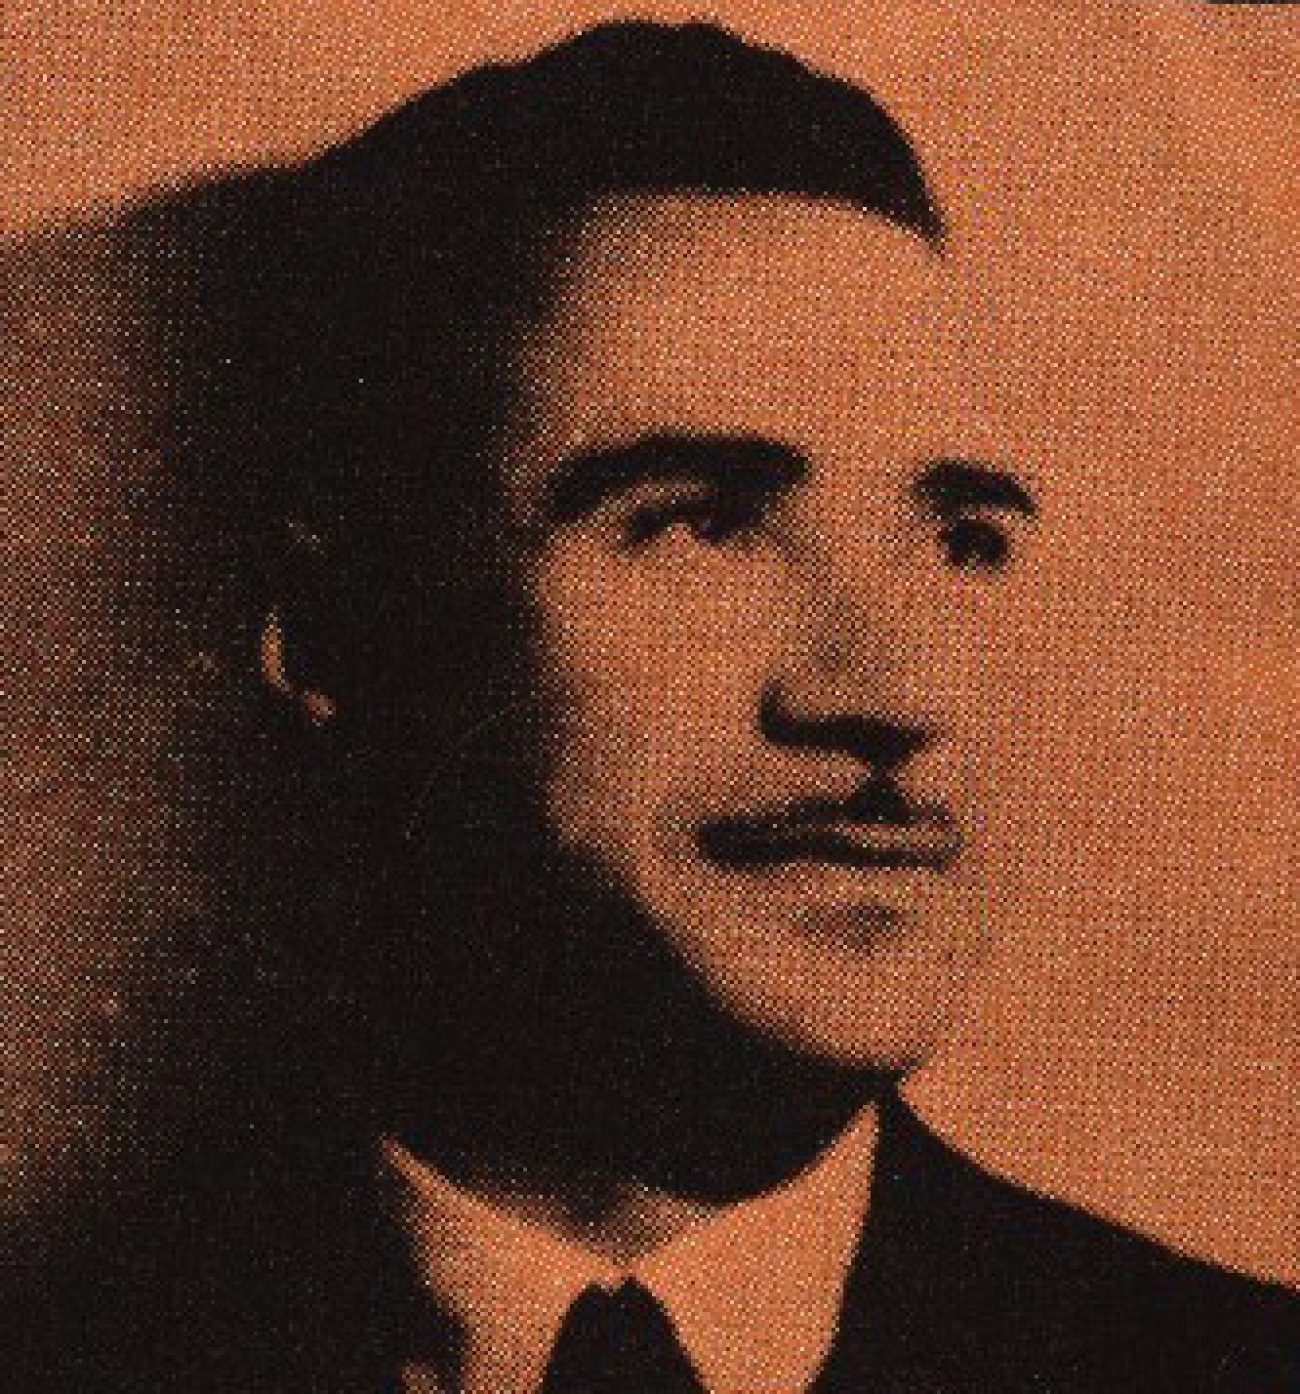 Joaquim Gomes quando se encontrava na clandestinidade (anos 60)